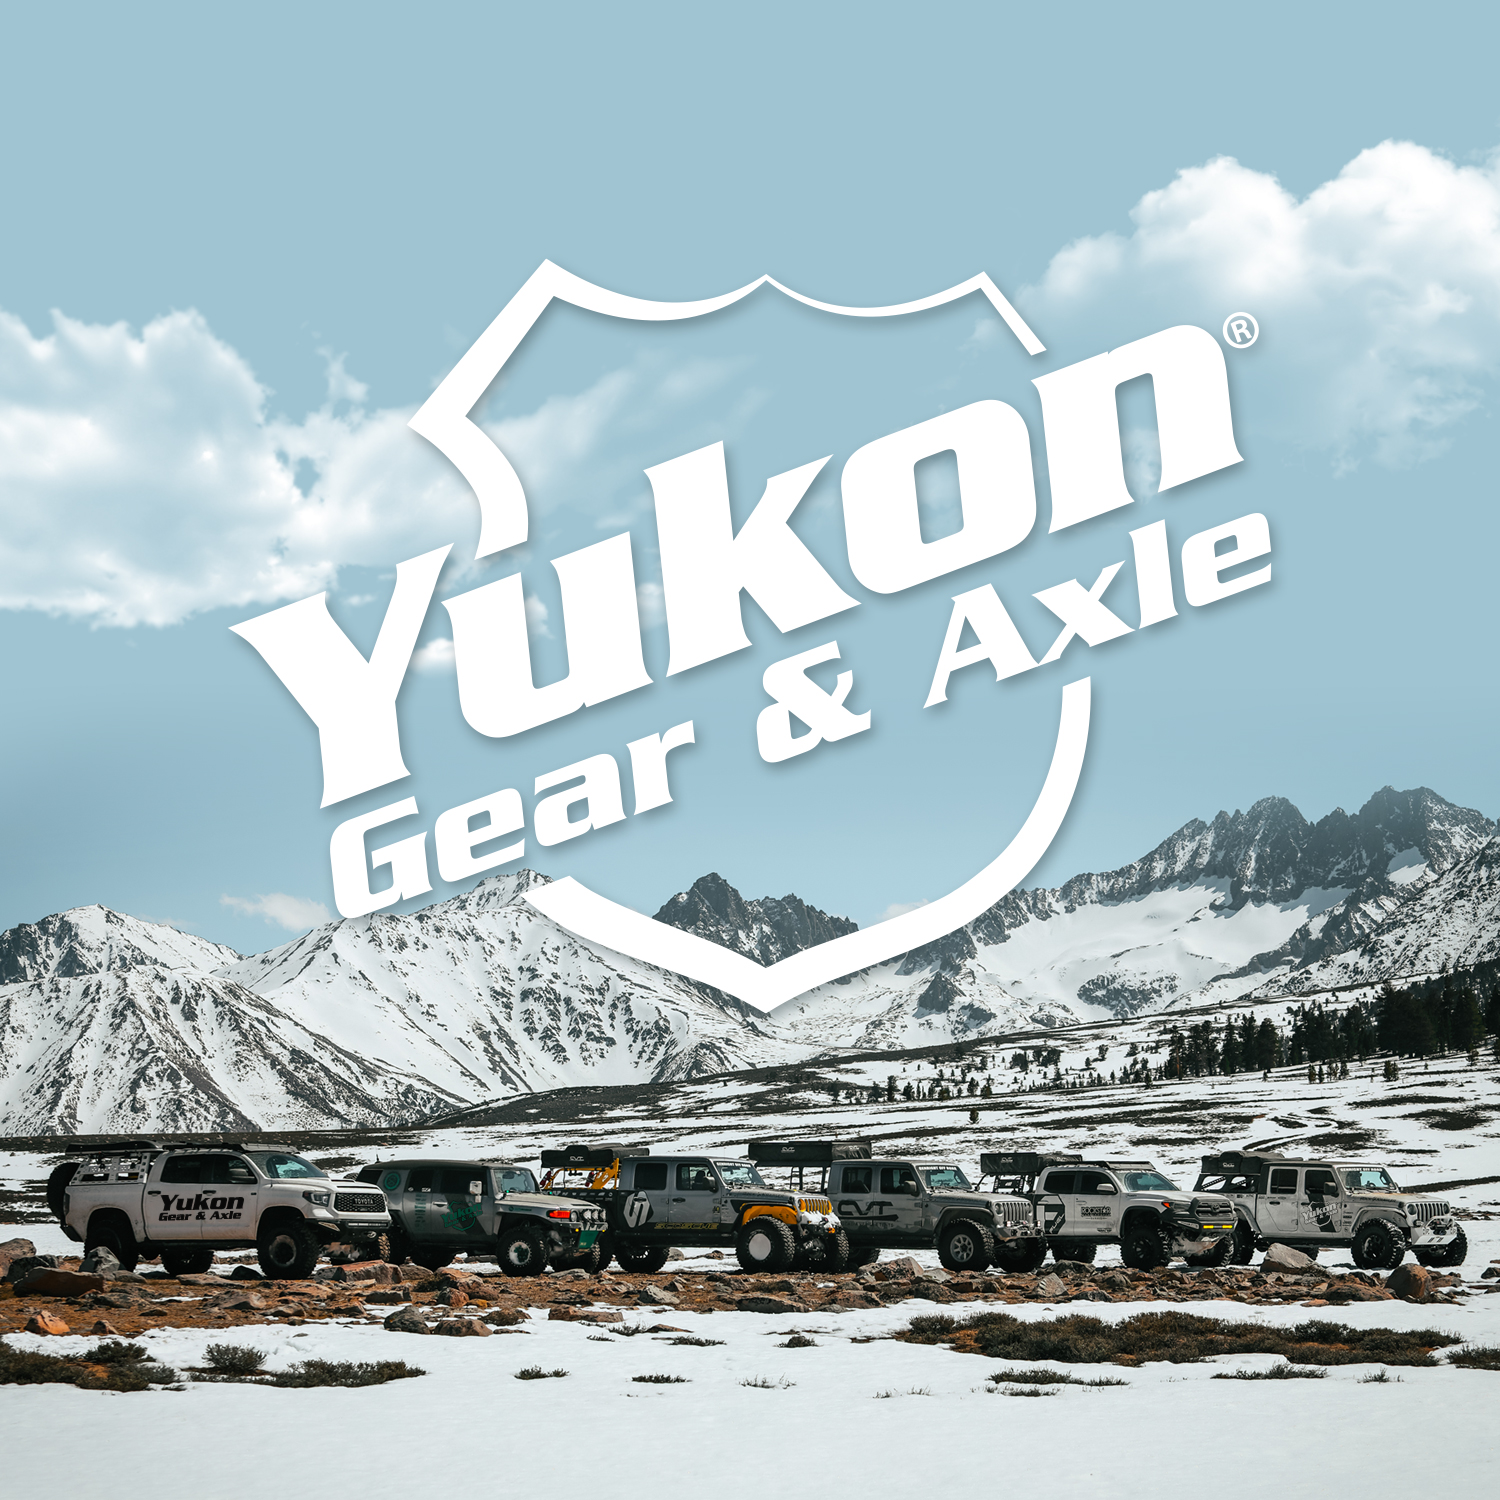 Yukon ring & pinion set, Toyota 8", high pinion in reverse, w/yoke kit, 4.11 